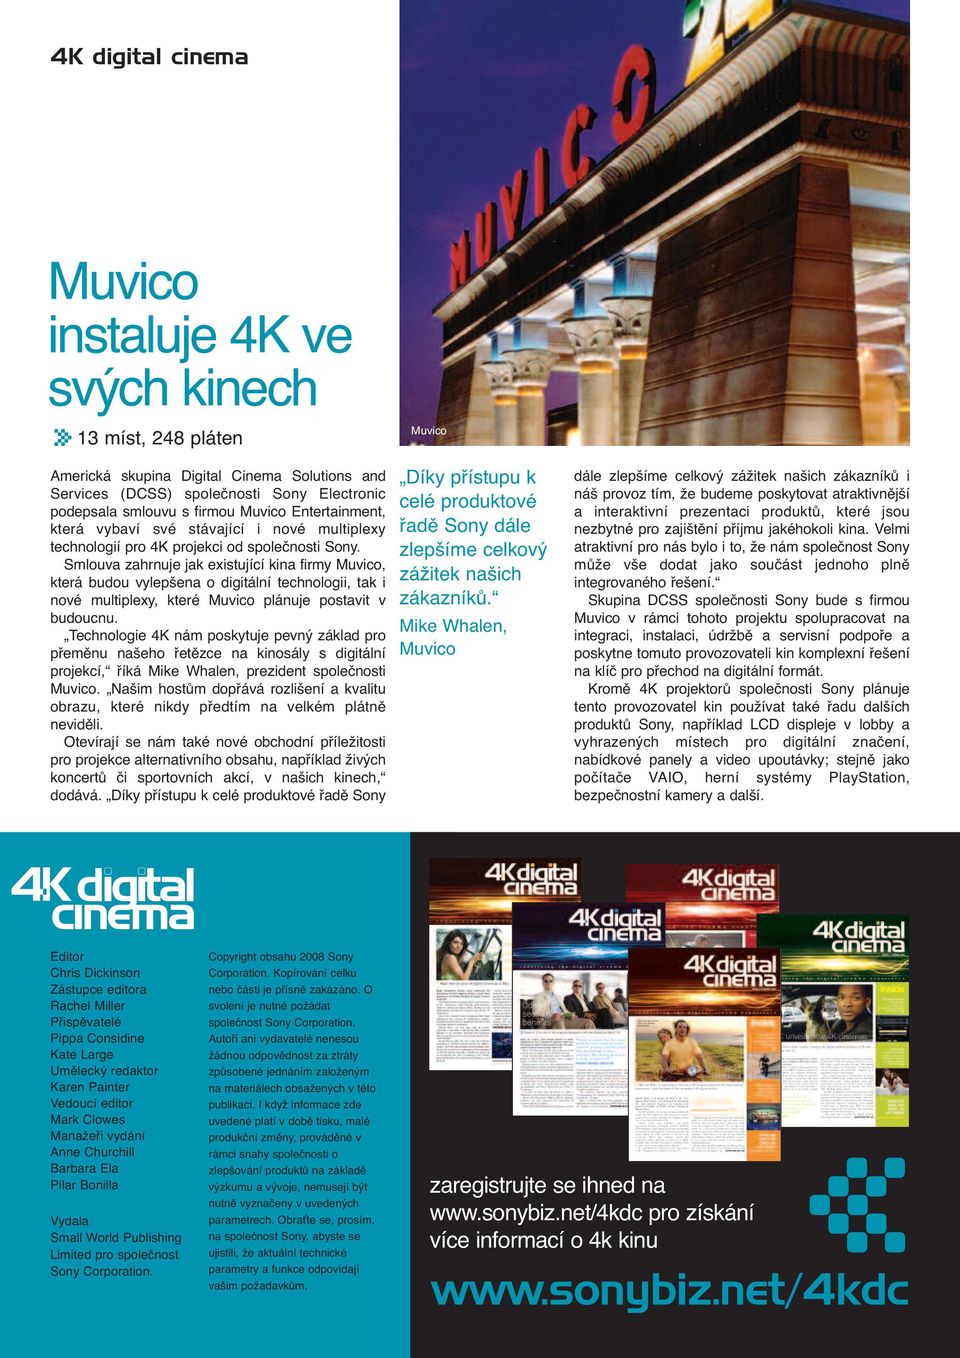 Smlouva zahrnuje jak existující kina firmy Muvico, která budou vylepšena o digitální technologii, tak i nové multiplexy, které Muvico plánuje postavit v budoucnu.